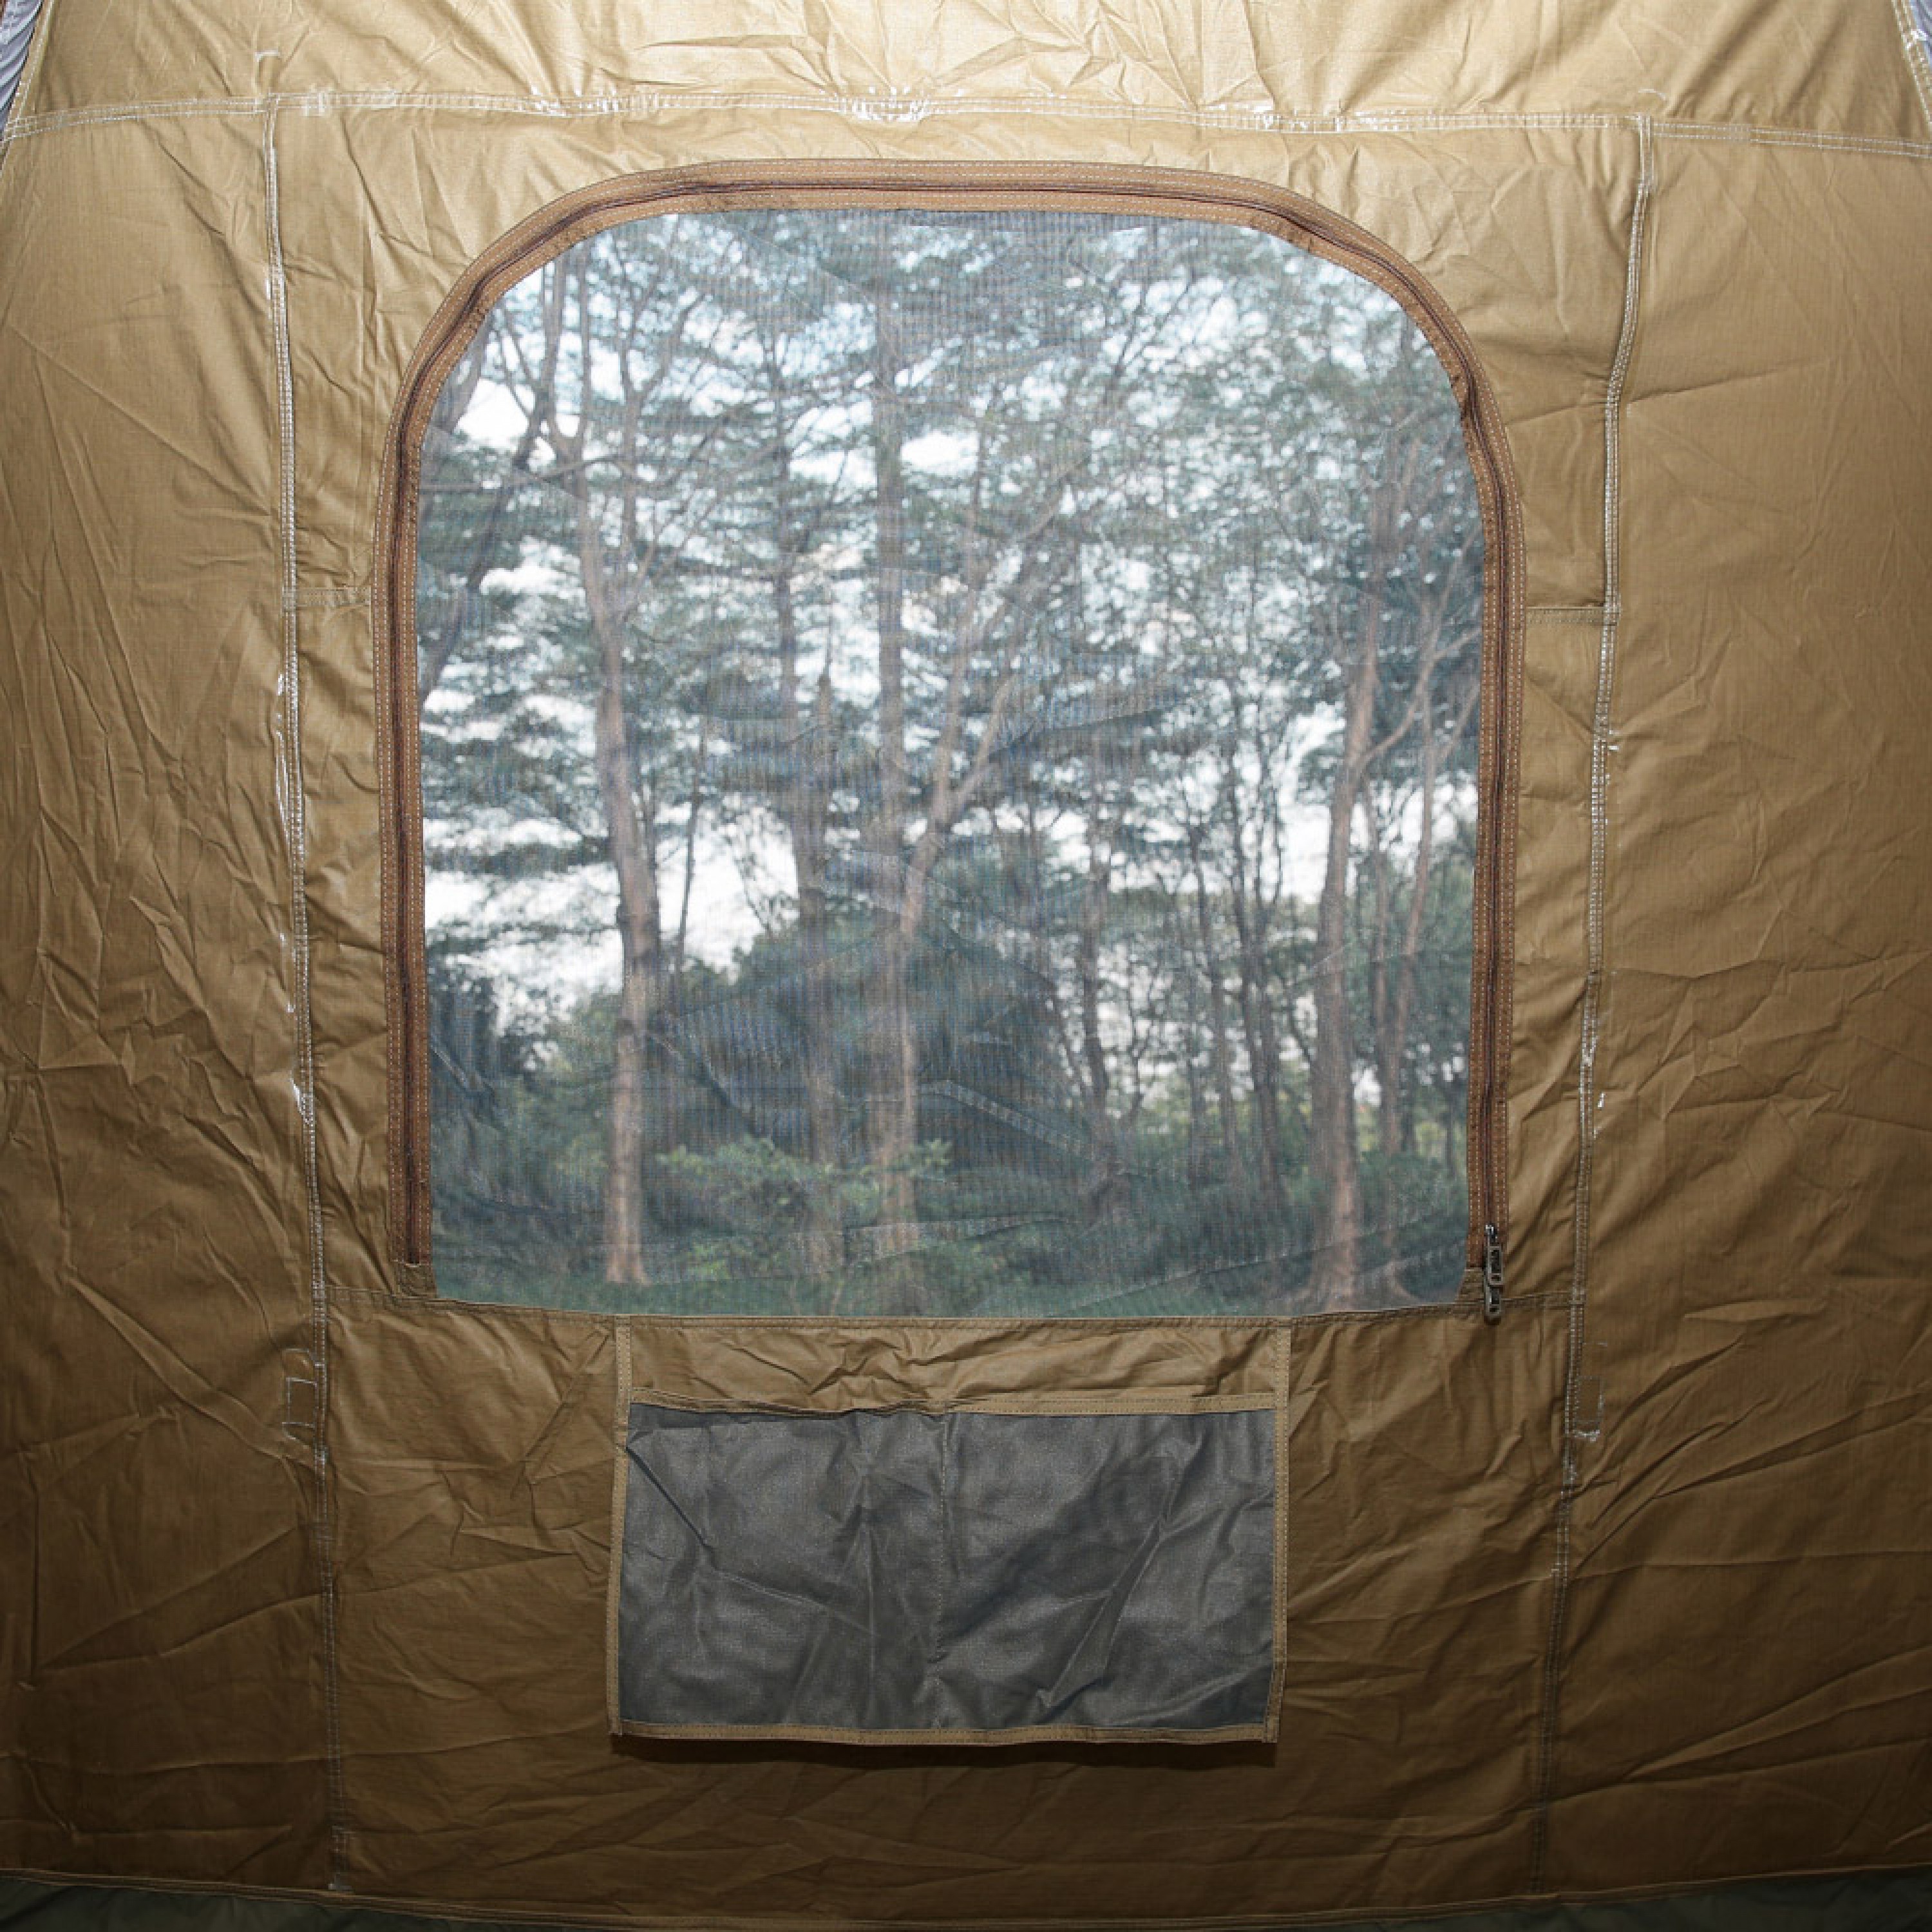 دي بي تي، خيمة رحلات هوائية قماش قطني، خيمة نفخ بالهواء، كاكي غامق، مقاس 300*300*215 سم